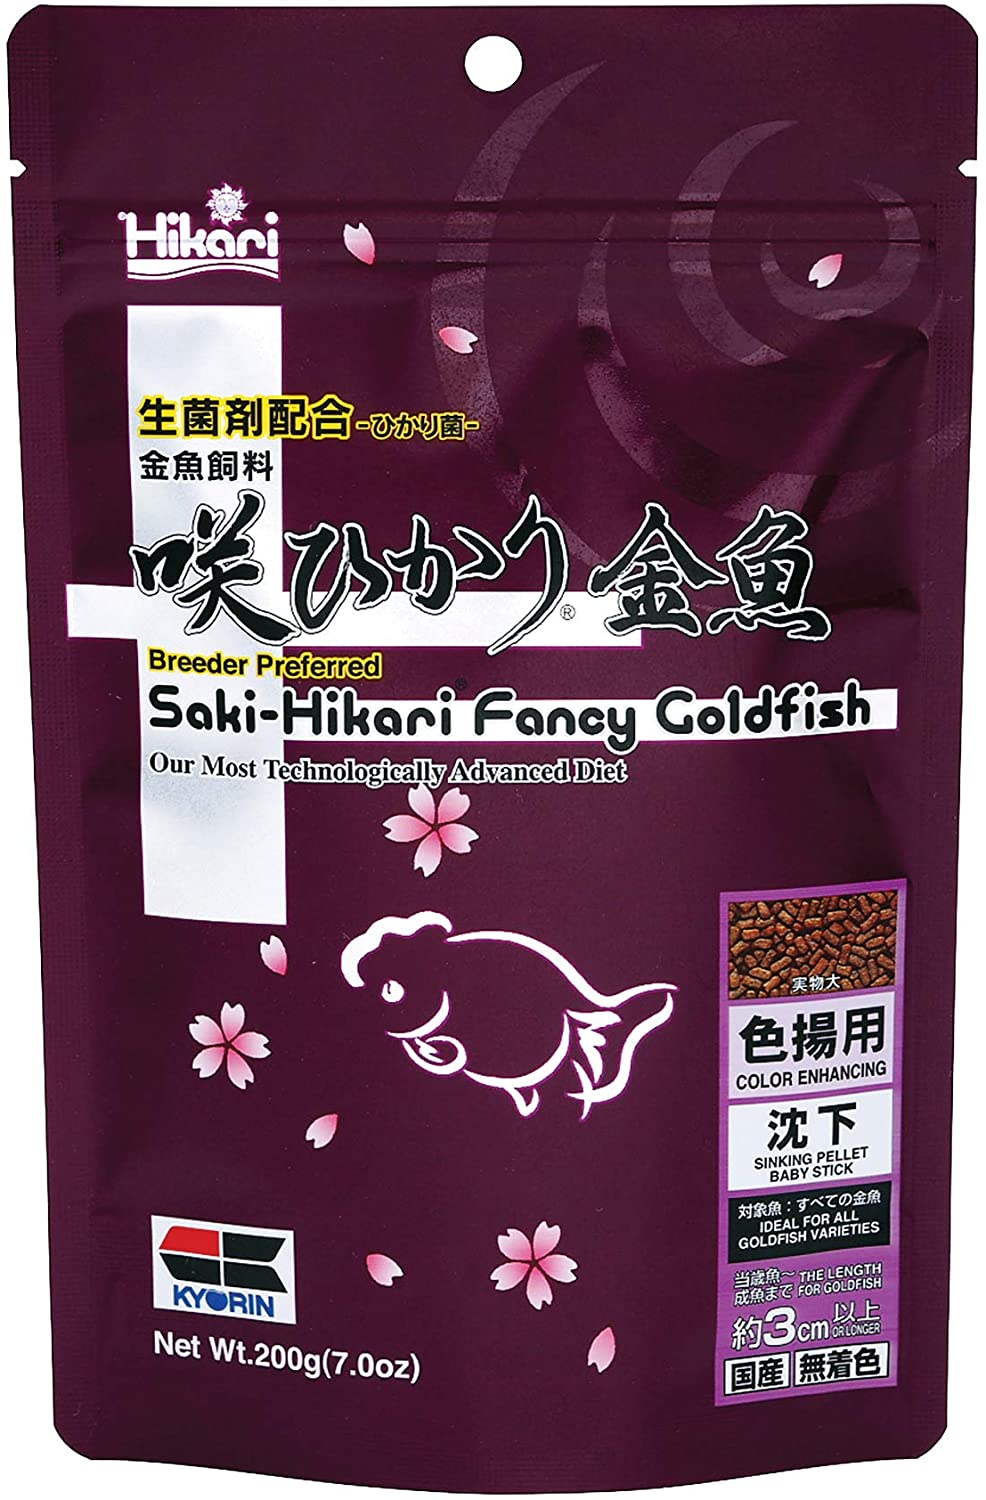 Hikari Saki-Hikari Fancy Goldfish